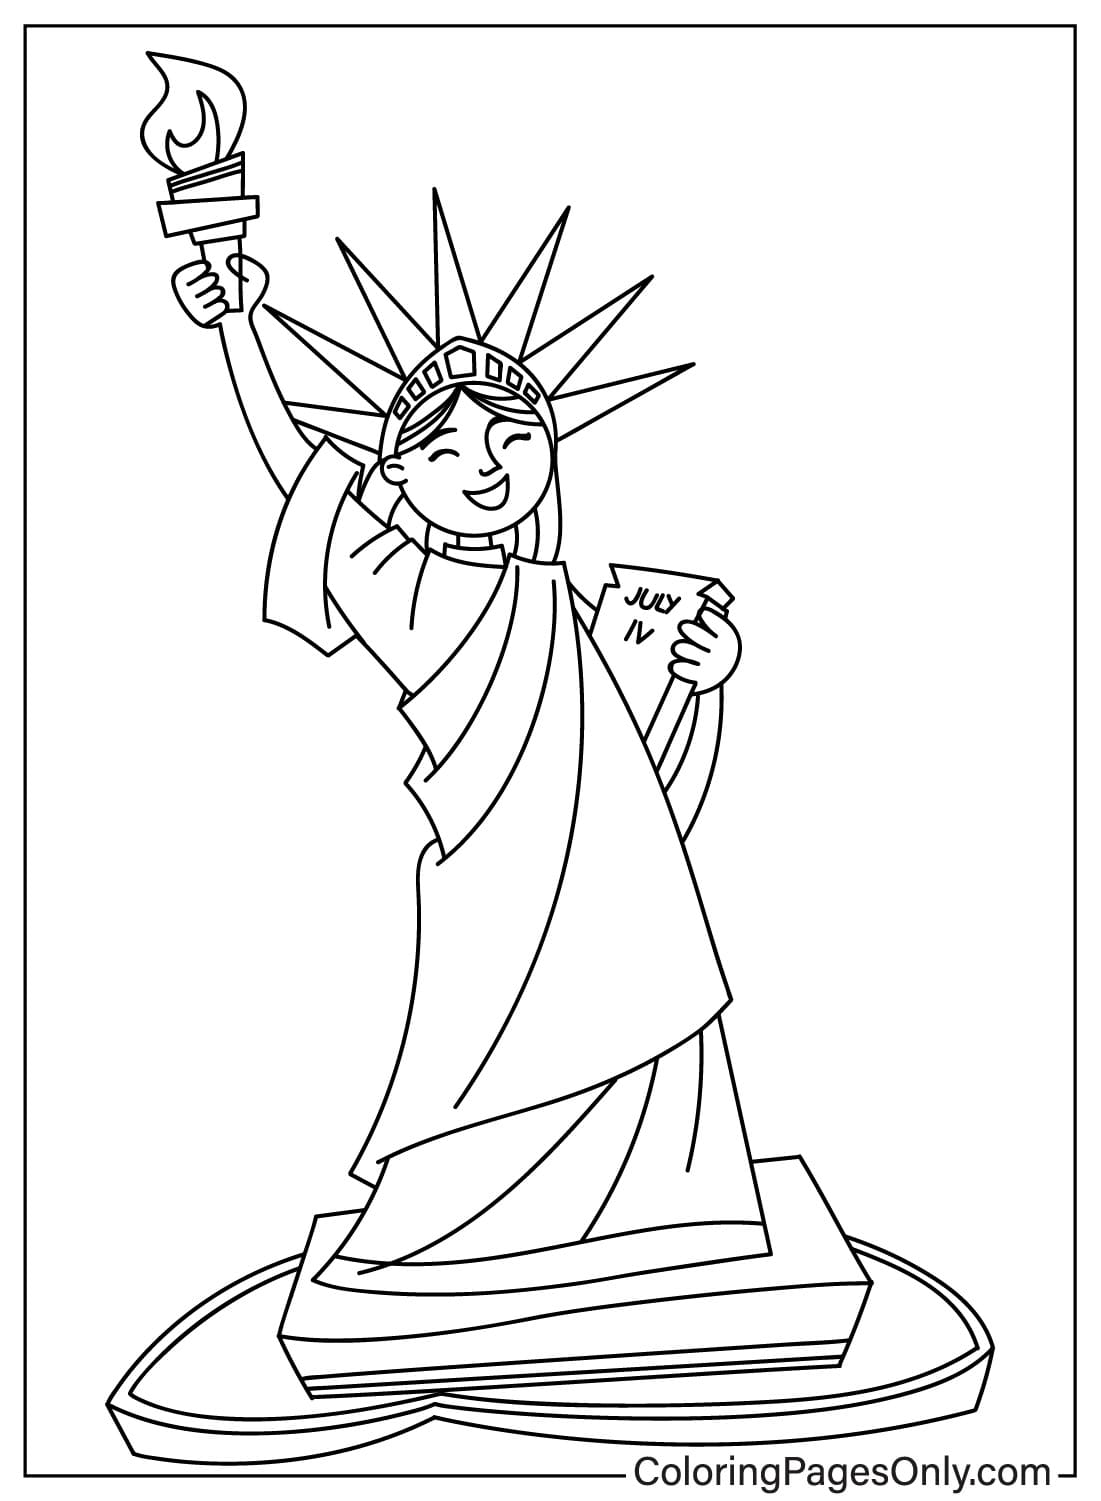 Dibujos para colorear de la Estatua de la Libertad para descargar